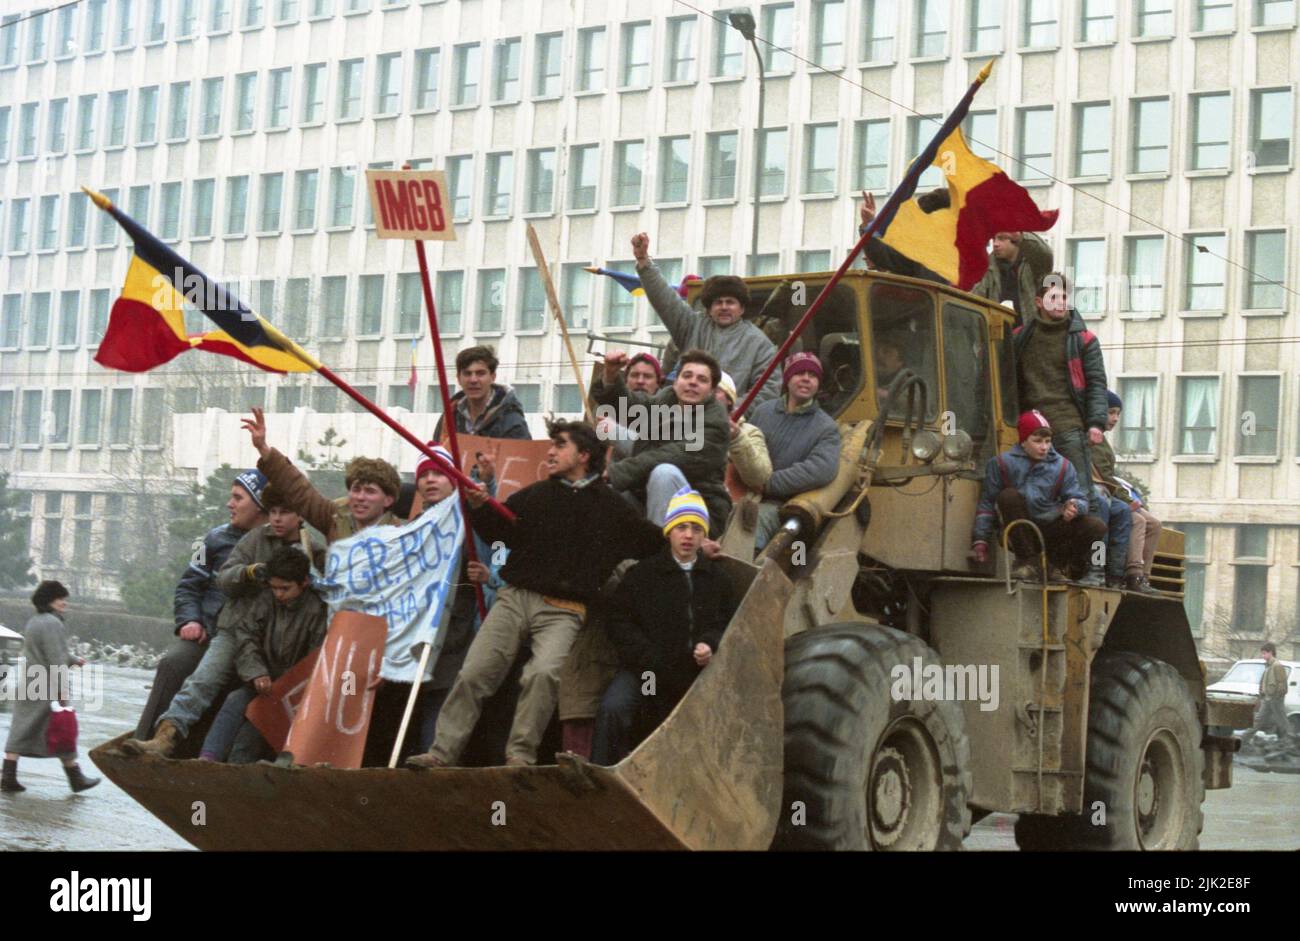 Bukarest, Rumänien, Januar 1990. Nach der antikommunistischen Revolution vom 1989. Dezember setzten sich die bürgerlichen Unruhen fort, als die Menschen gegen die kommunistischen Tendenzen des neuen Regierungsgremiums F.S.N. protestierten Parallel dazu marschierten einige Arbeiter aus den Hauptfabriken in Bukarest zur Unterstützung von F.S.N. Diese Gruppe von IMGB, einem Schwermaschinenhersteller, ging in einem Bulldozer herum. Stockfoto